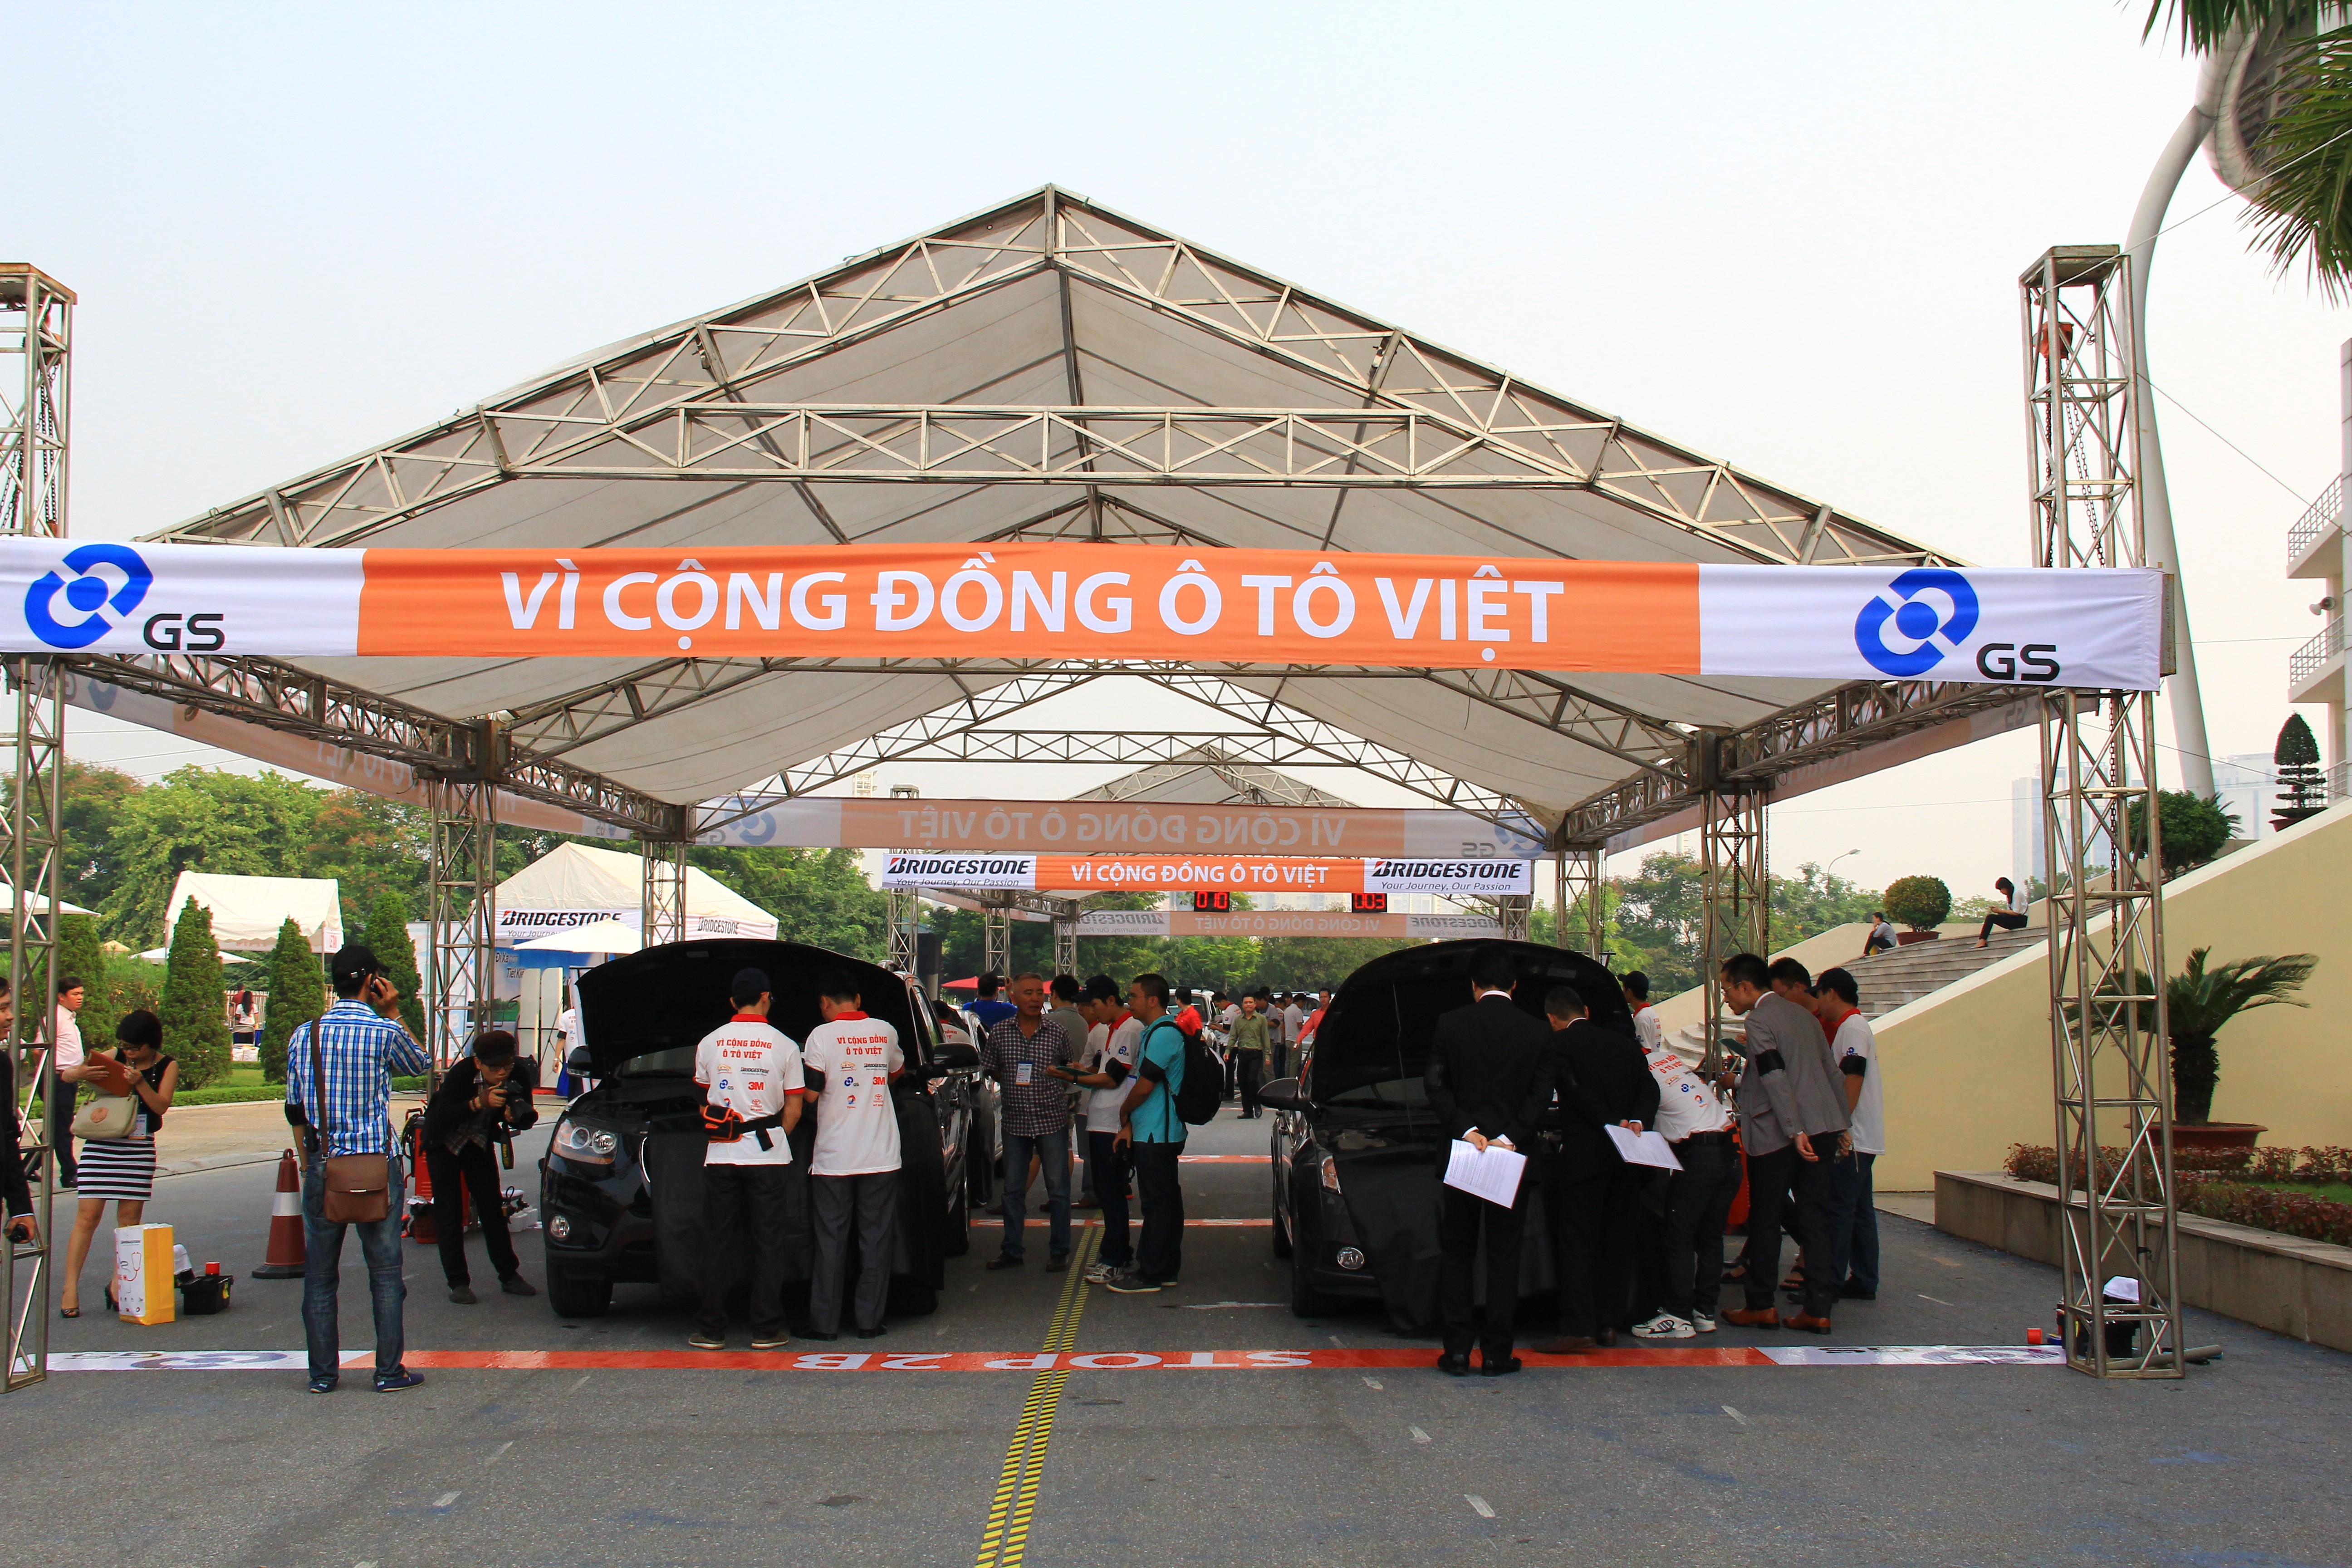 Tổng hợp hình ảnh “Ngày hội chăm sóc xe” tại Hà Nội vào ngày 12 & 13/10/2013